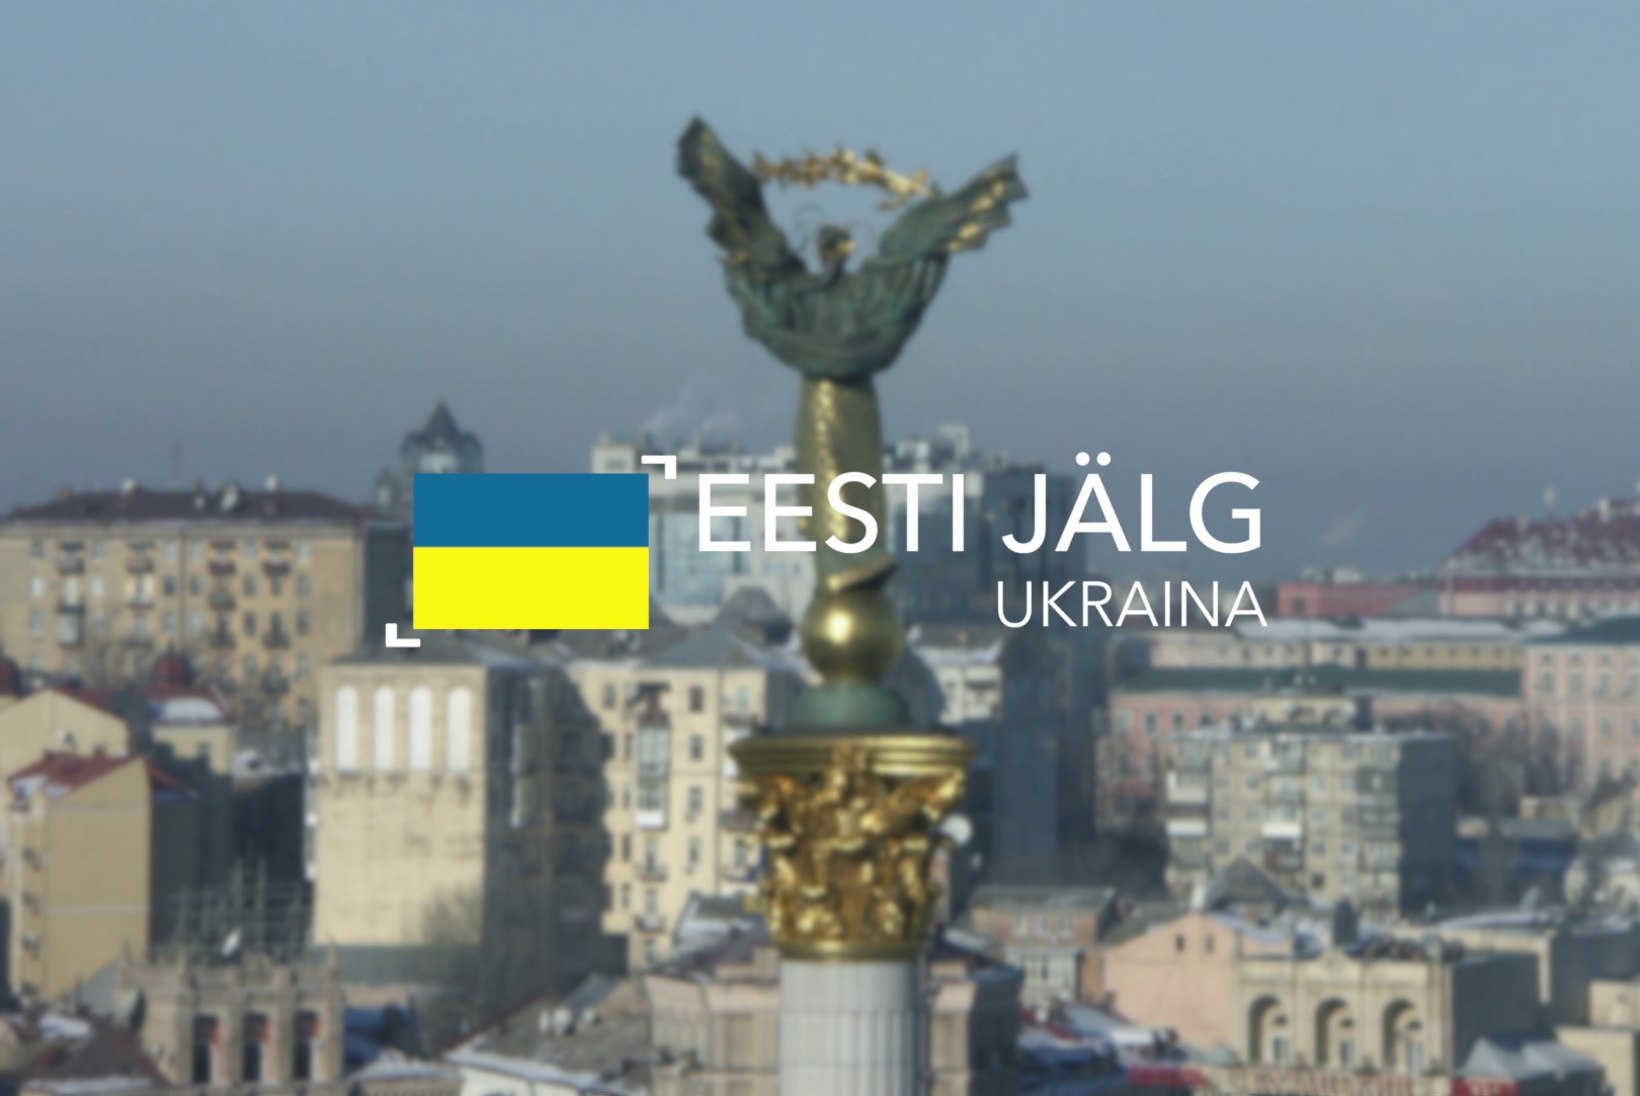 ETV ekraanile jõuab uus saatesari "Eesti jälg" 